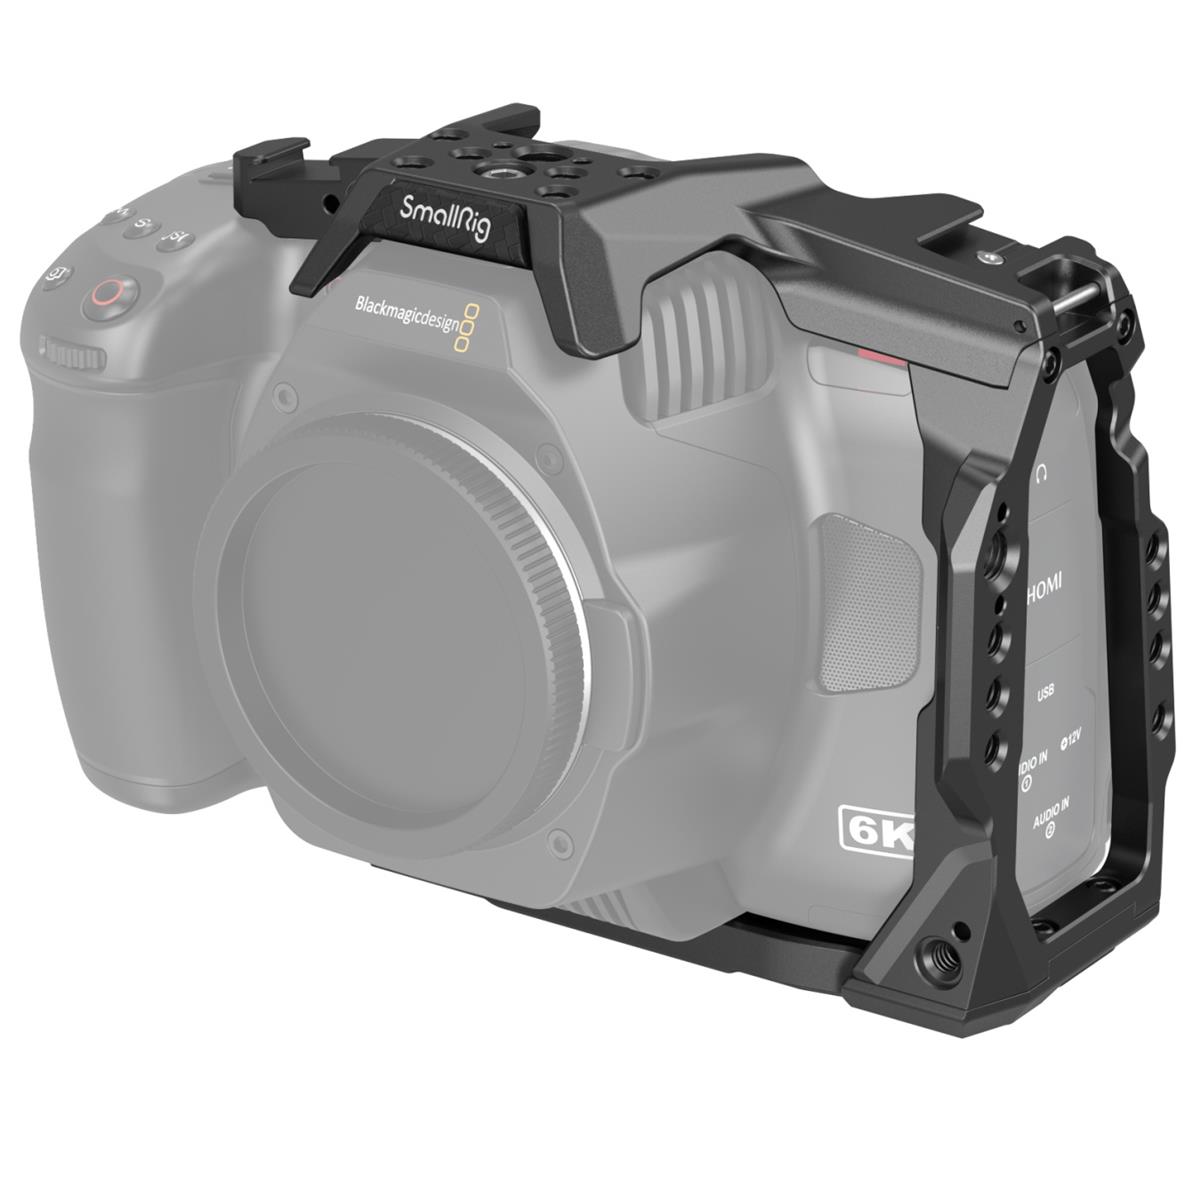 Половинная клетка SmallRig для Blackmagic Design Pocket Cinema Camera 6K Pro #3665